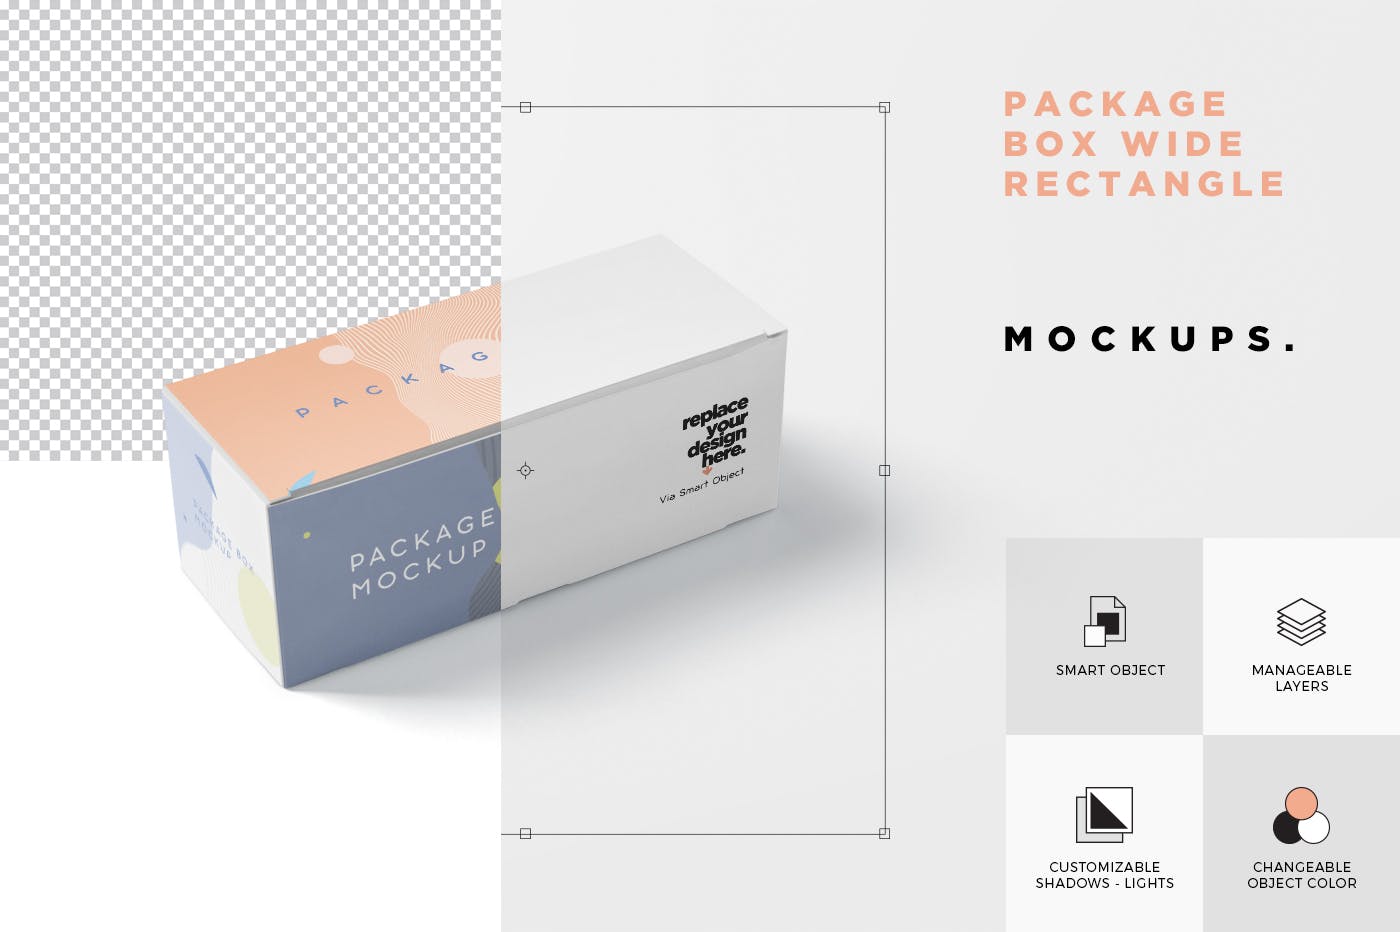 宽矩形包装盒外观设计效果图素材中国精选 Package Box Mock-Up Set – Wide Rectangle插图(6)